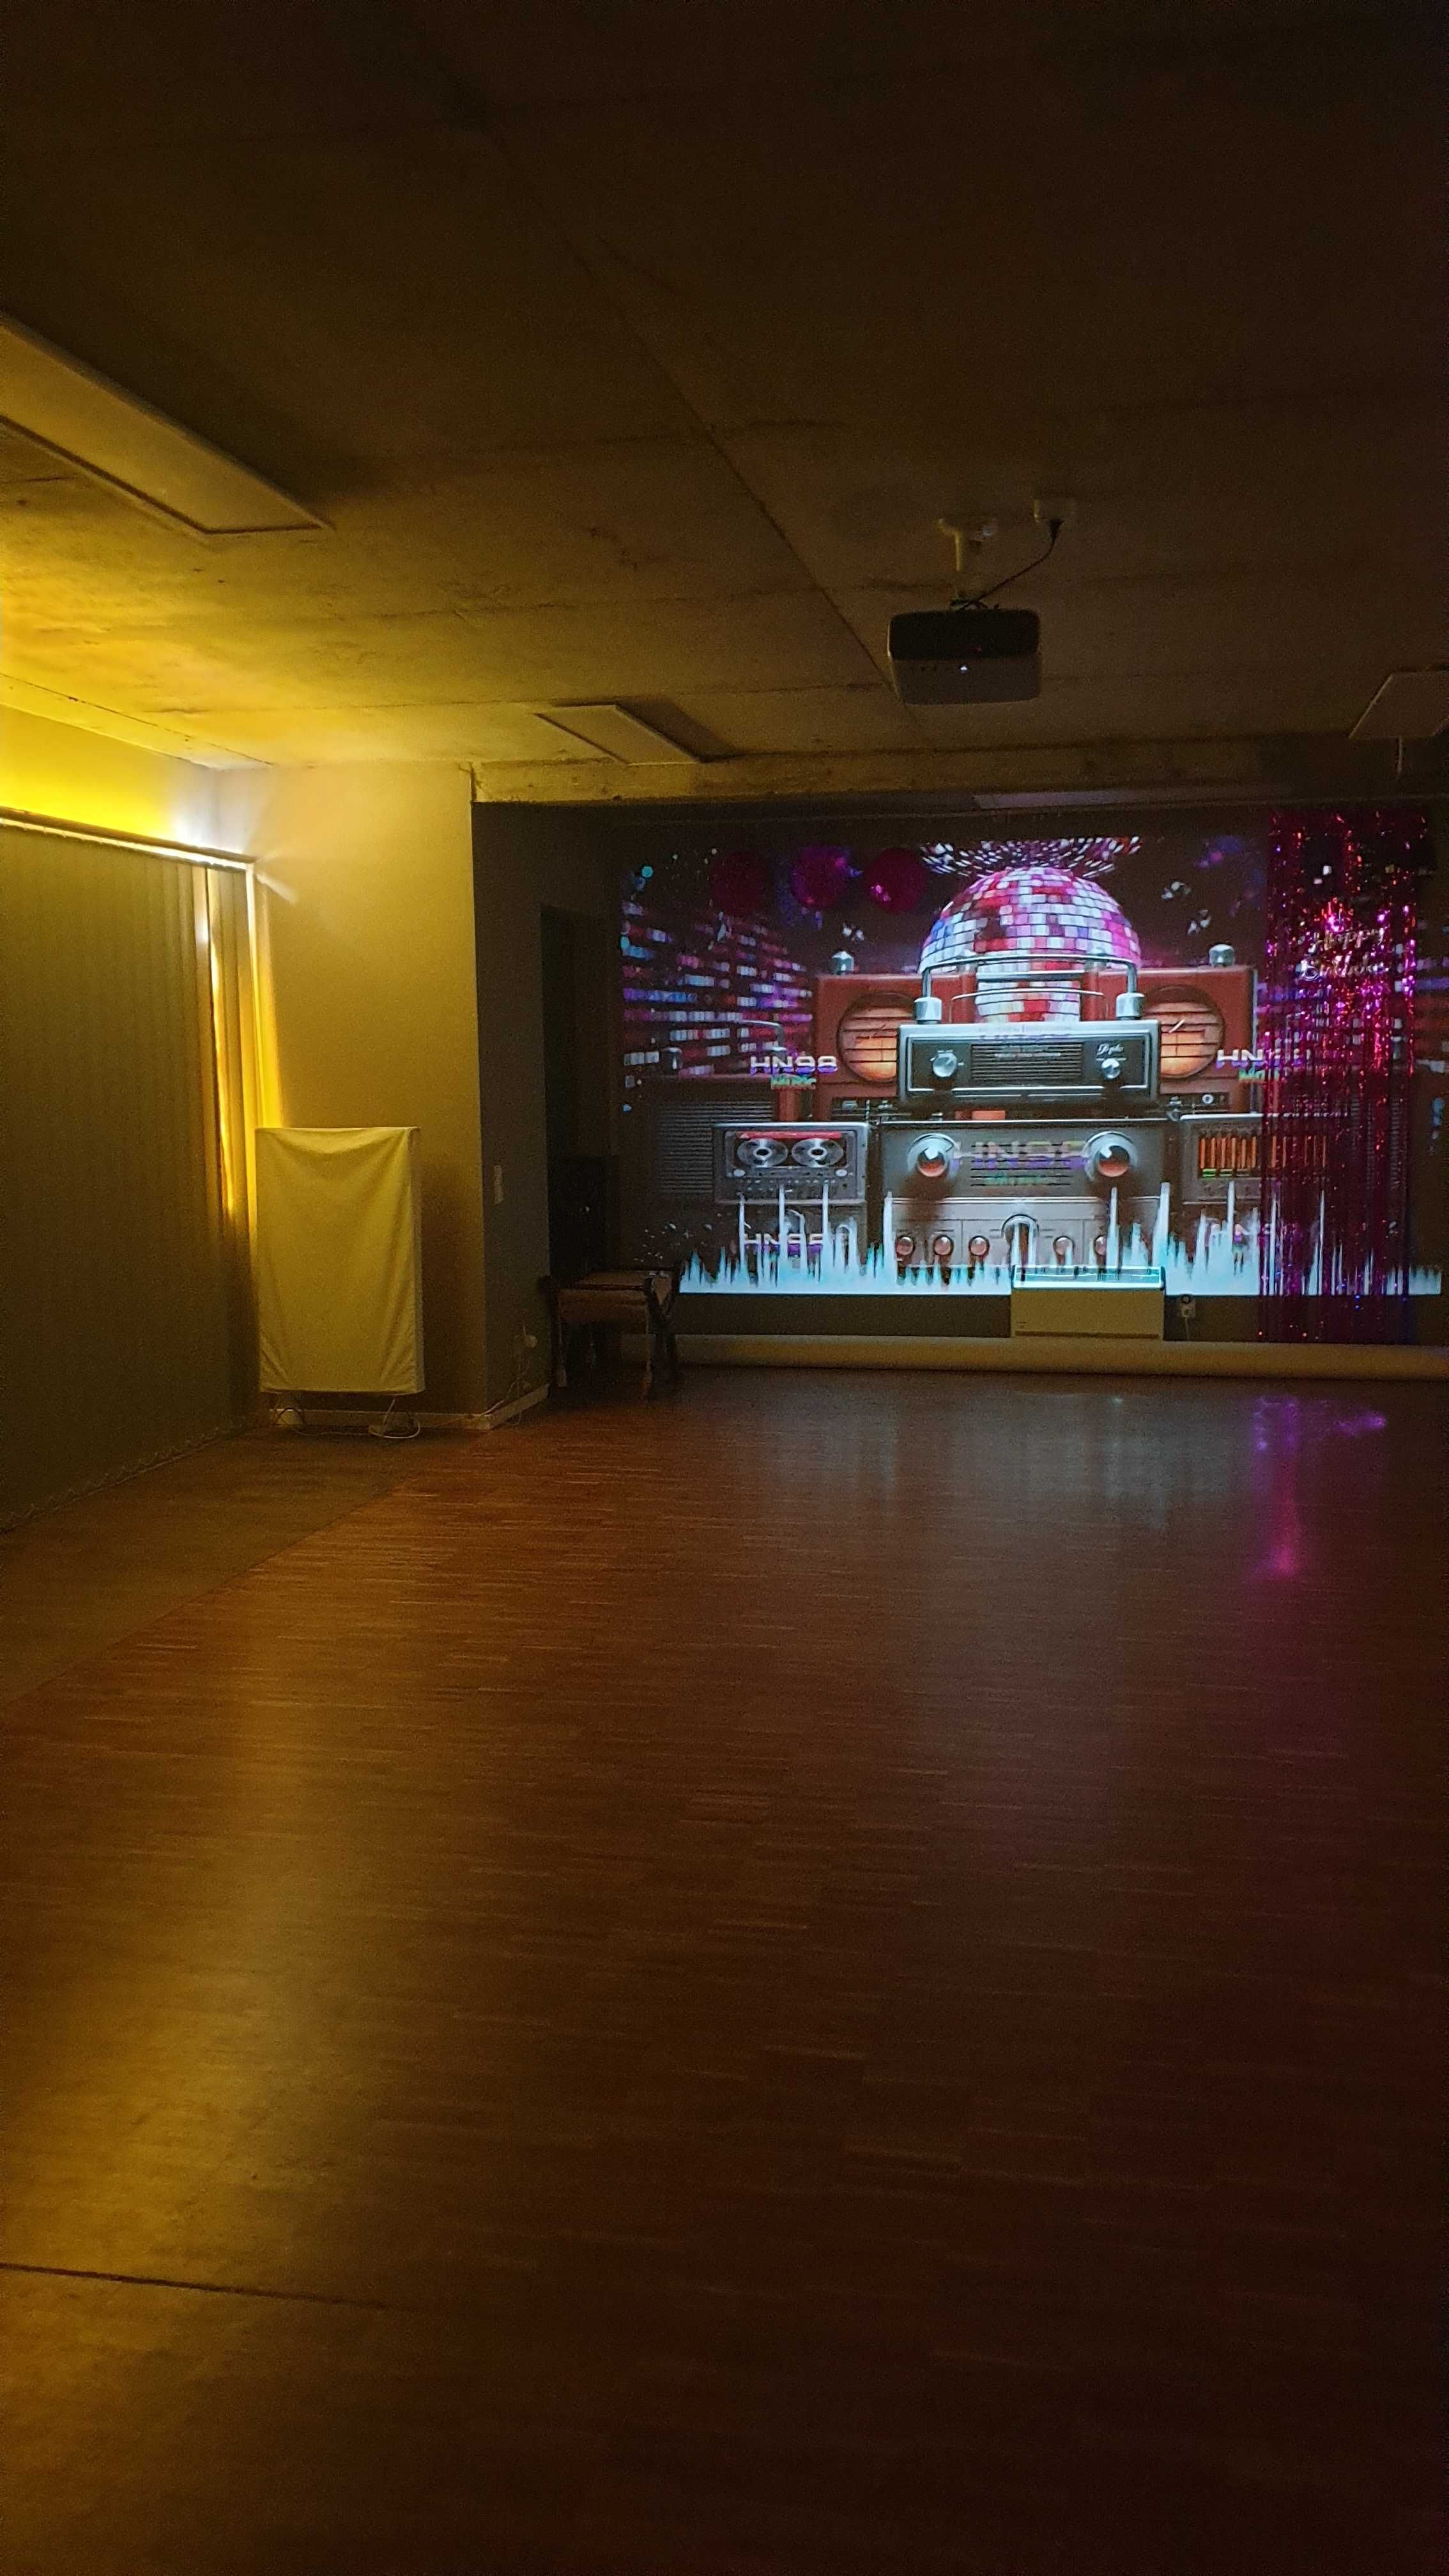 Sala lustra70mKraków taneczna  superkomfortowa  do nagrań